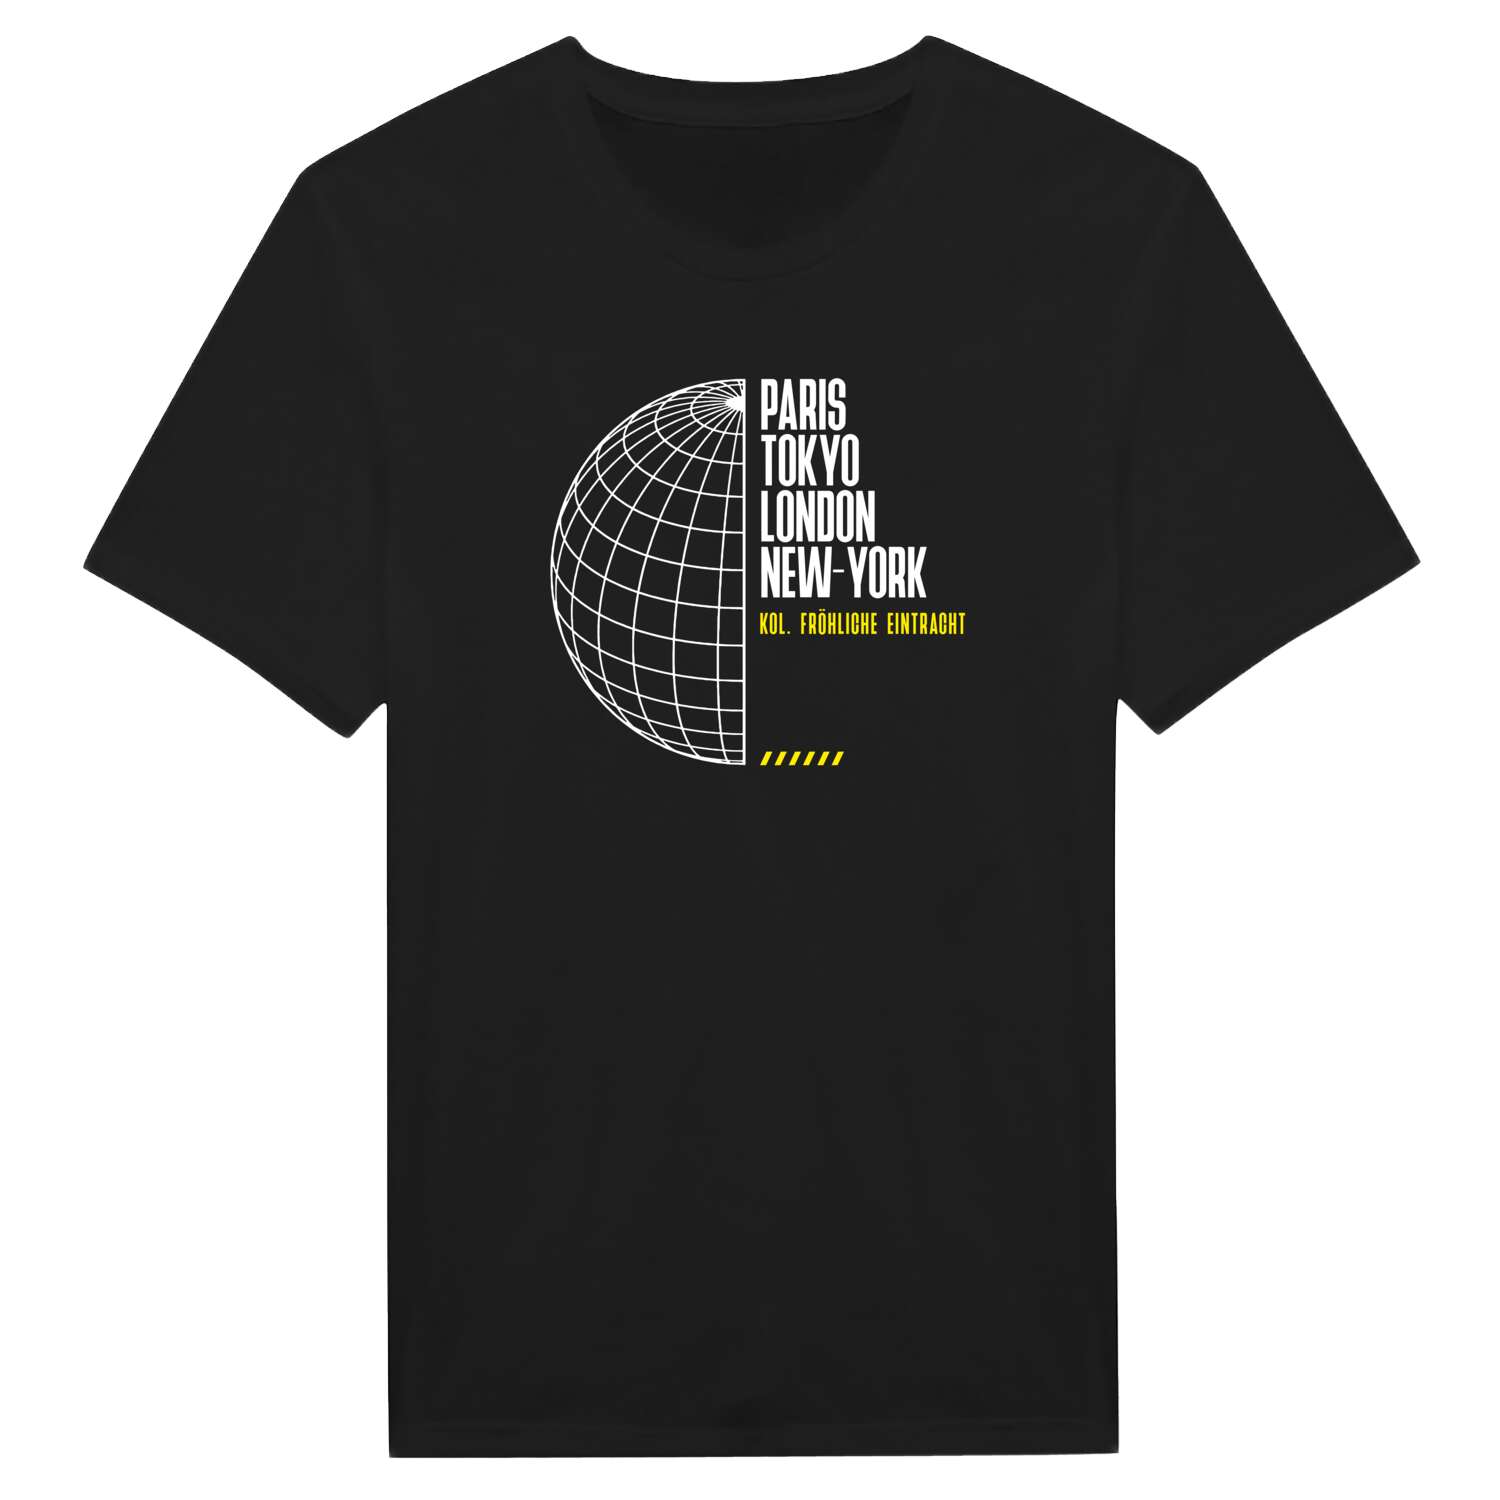 Kol. Fröhliche Eintracht T-Shirt »Paris Tokyo London«